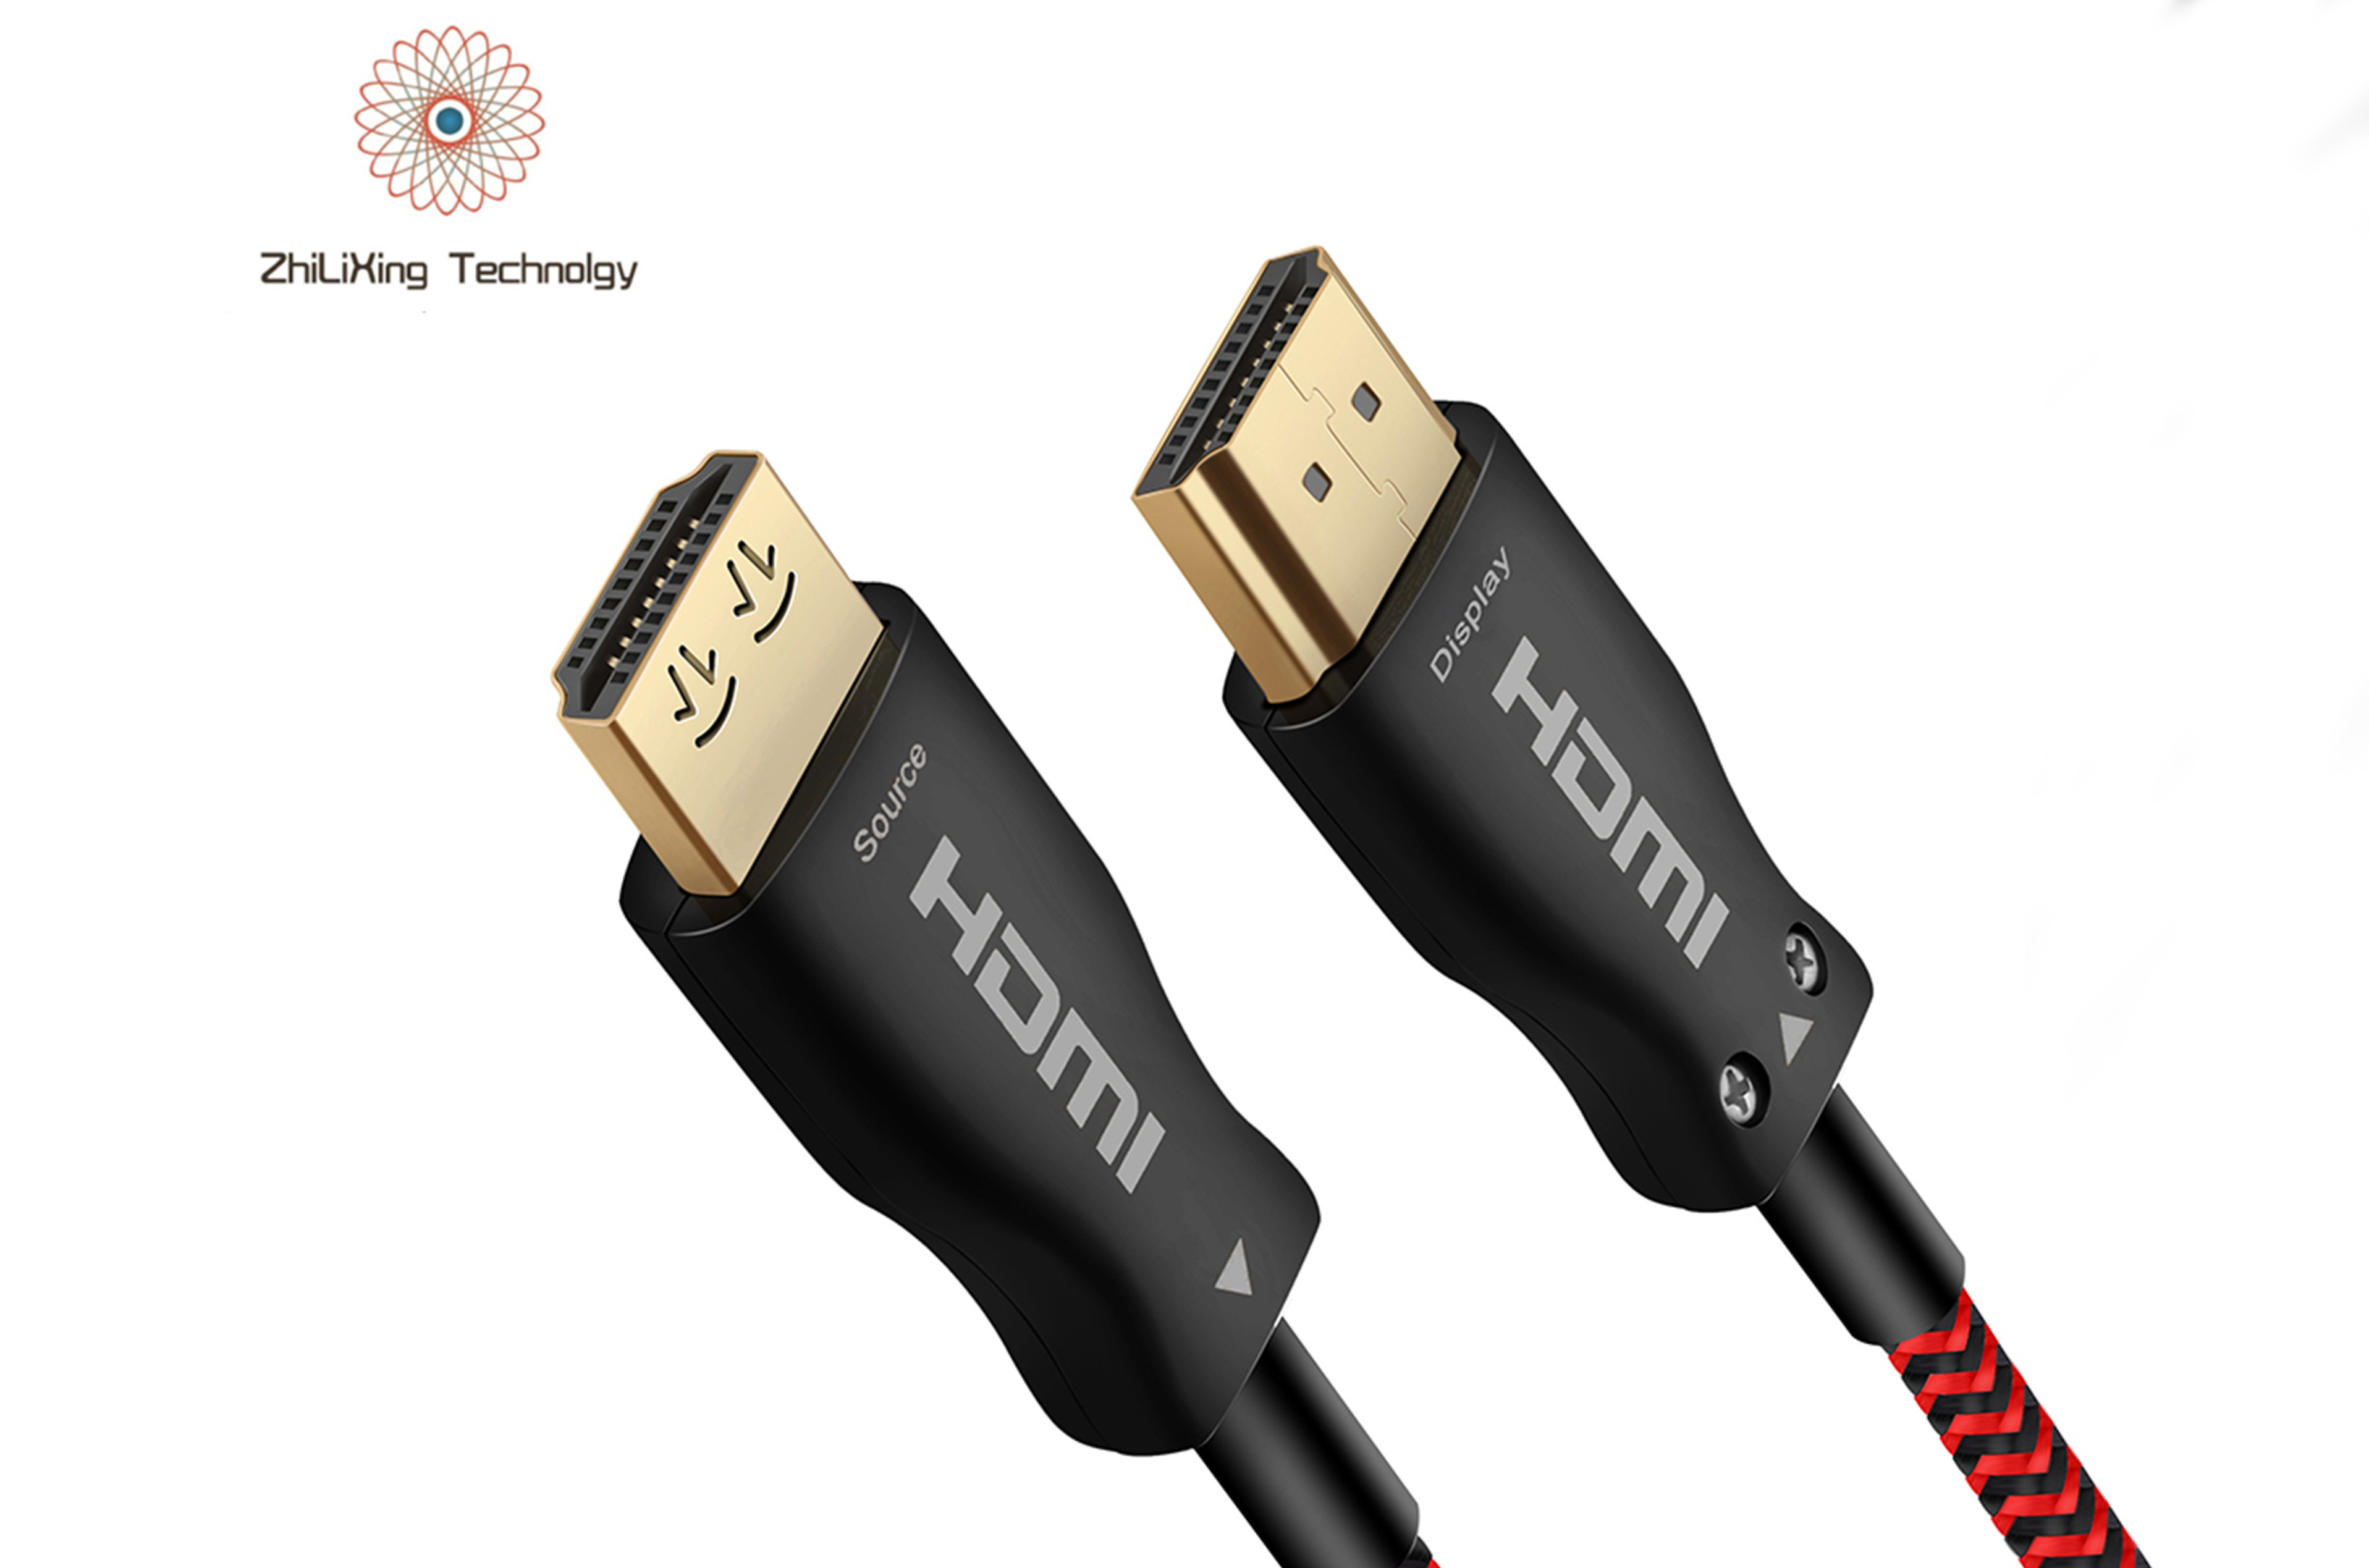 HDMI fiber optic cable-42035